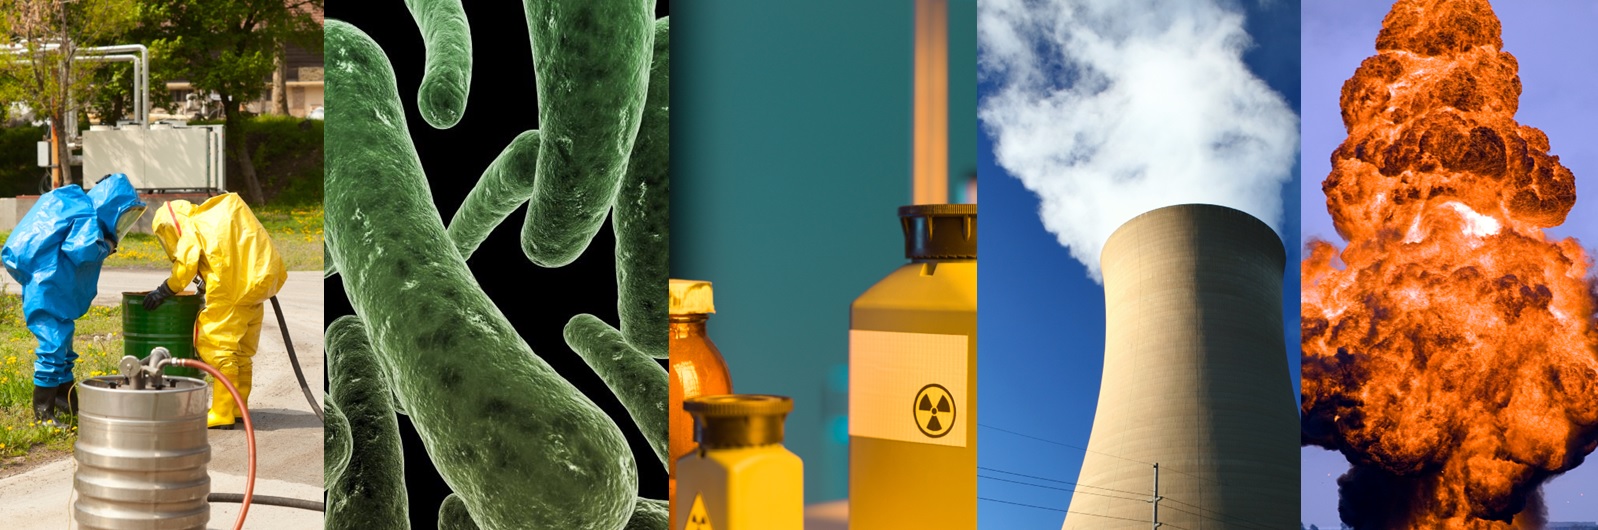 Kimyasal, Biyolojik, Radyolojik, Nükleer Tehdit ve Tehlikelere Dair Görev Yönetmeliği'nde Revizyon